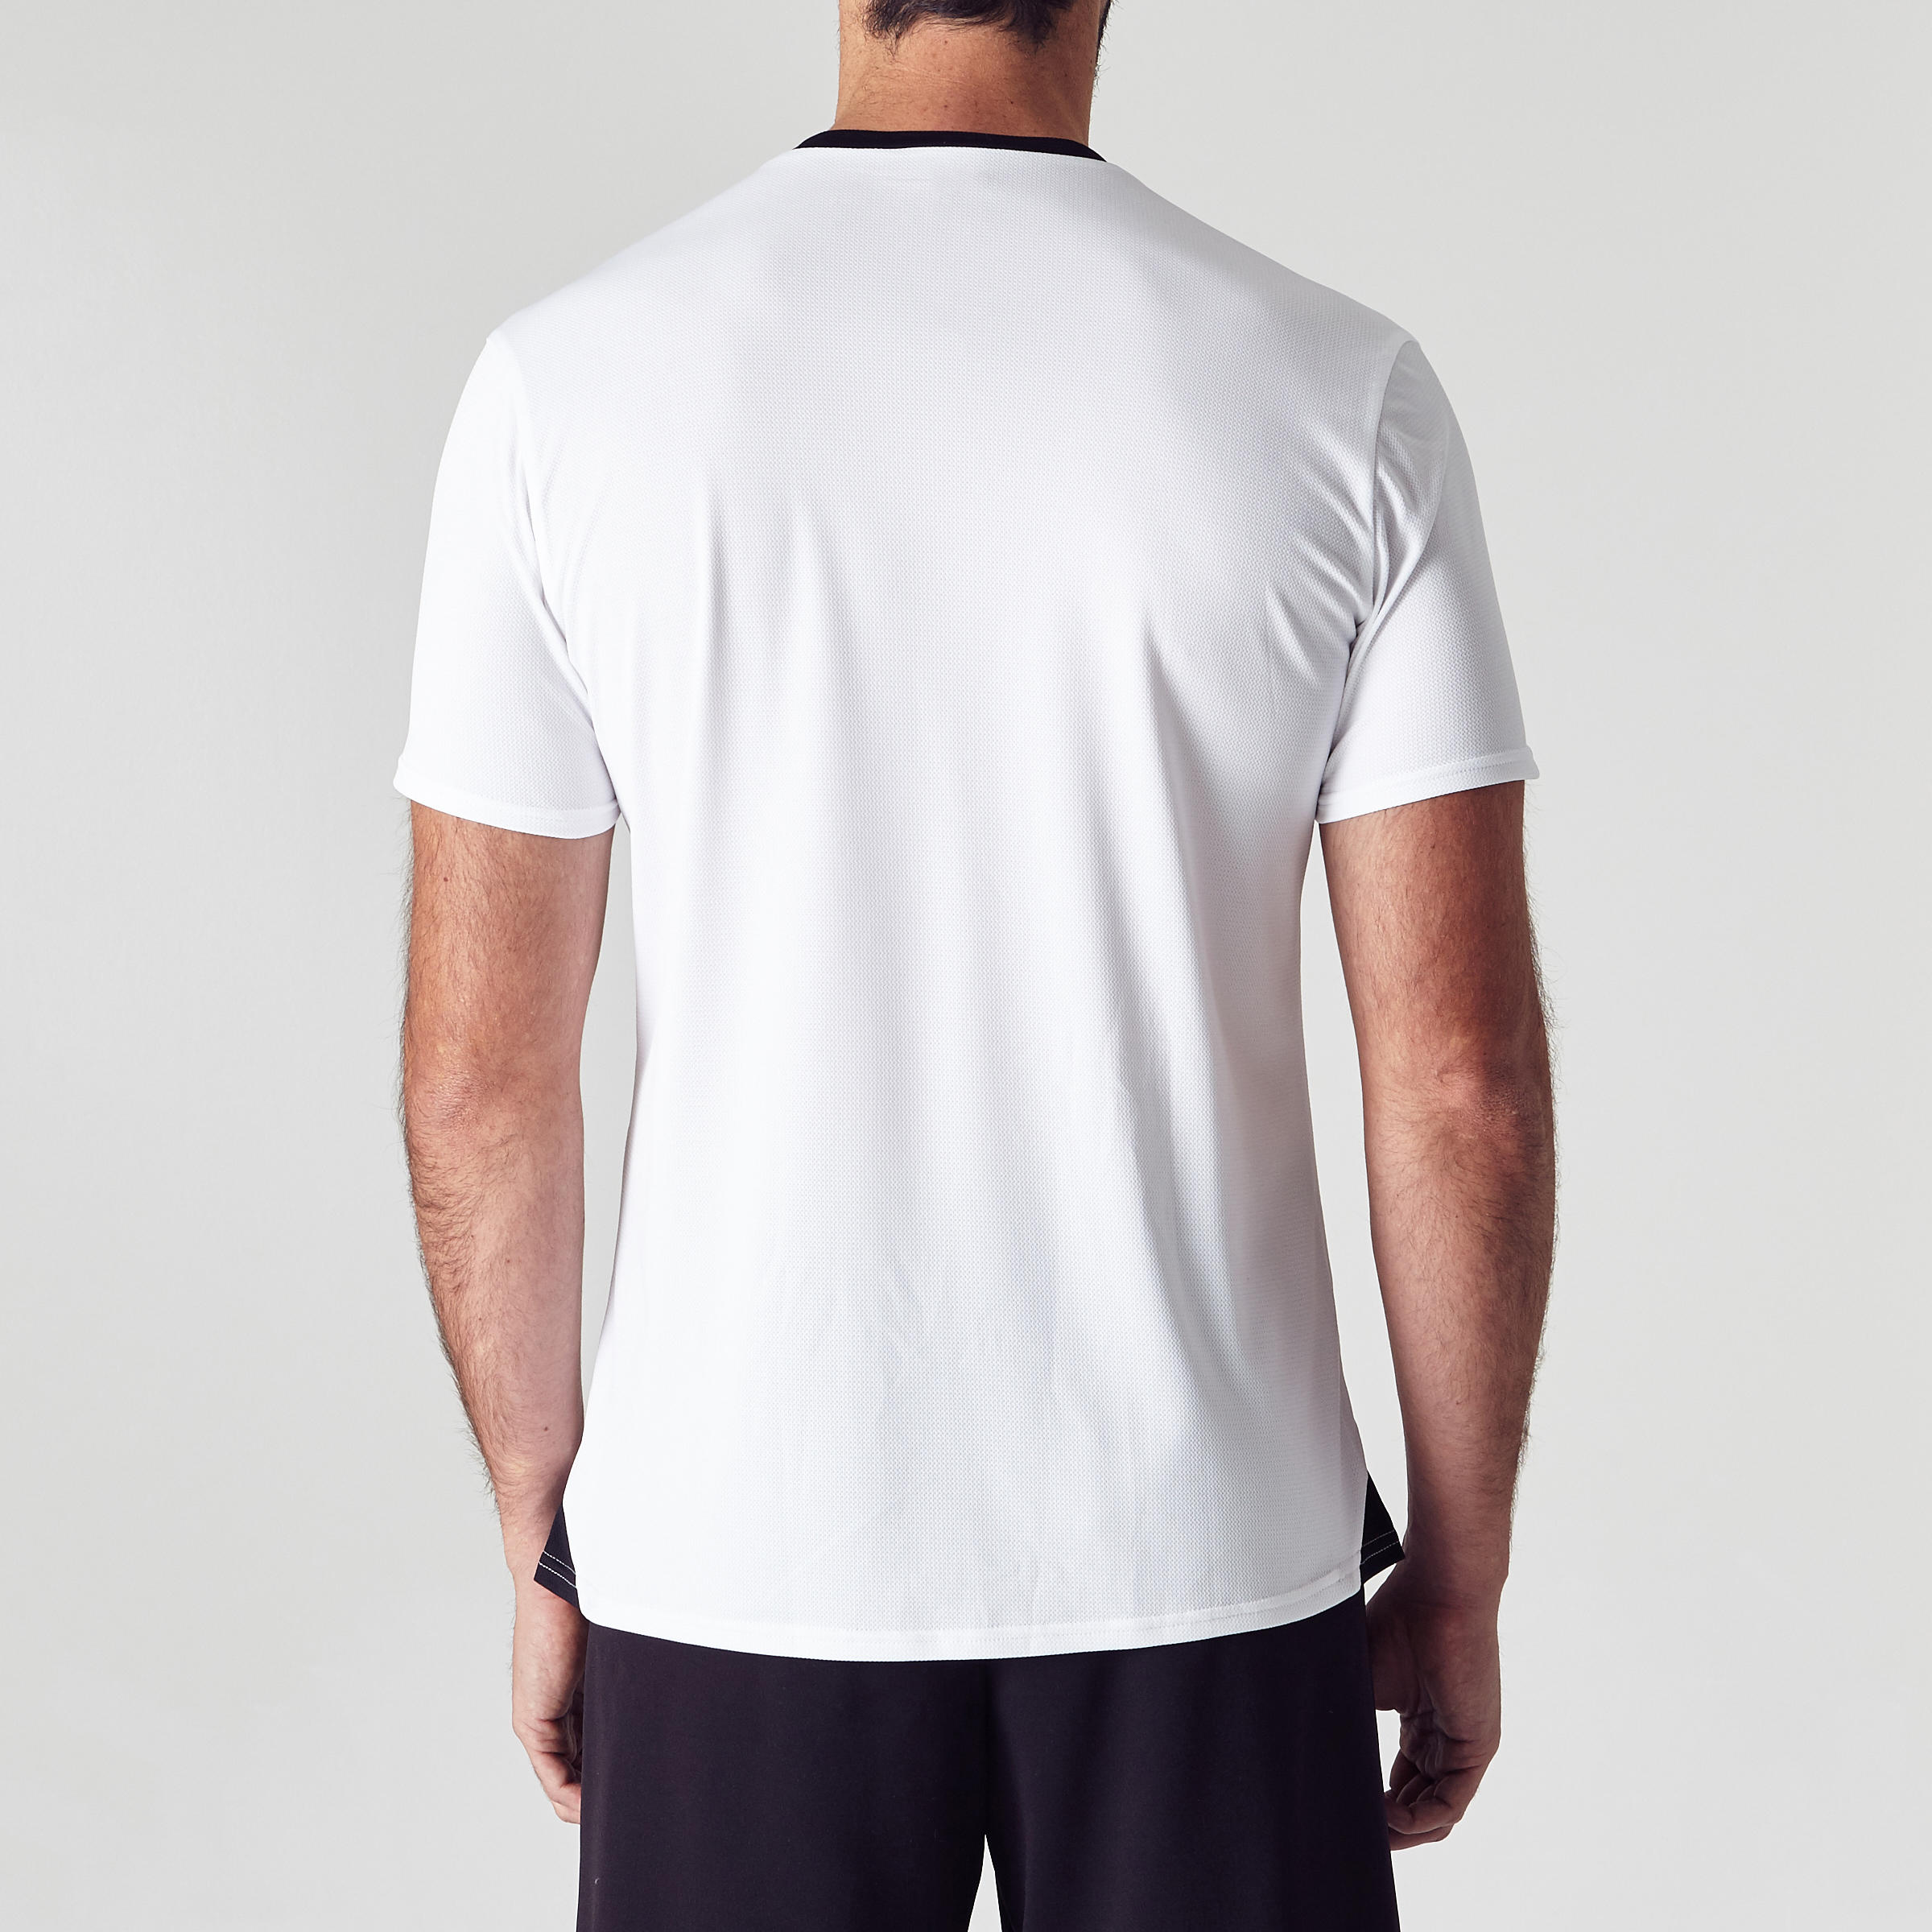 Adult Football Shirt Essential Club - White 25/29